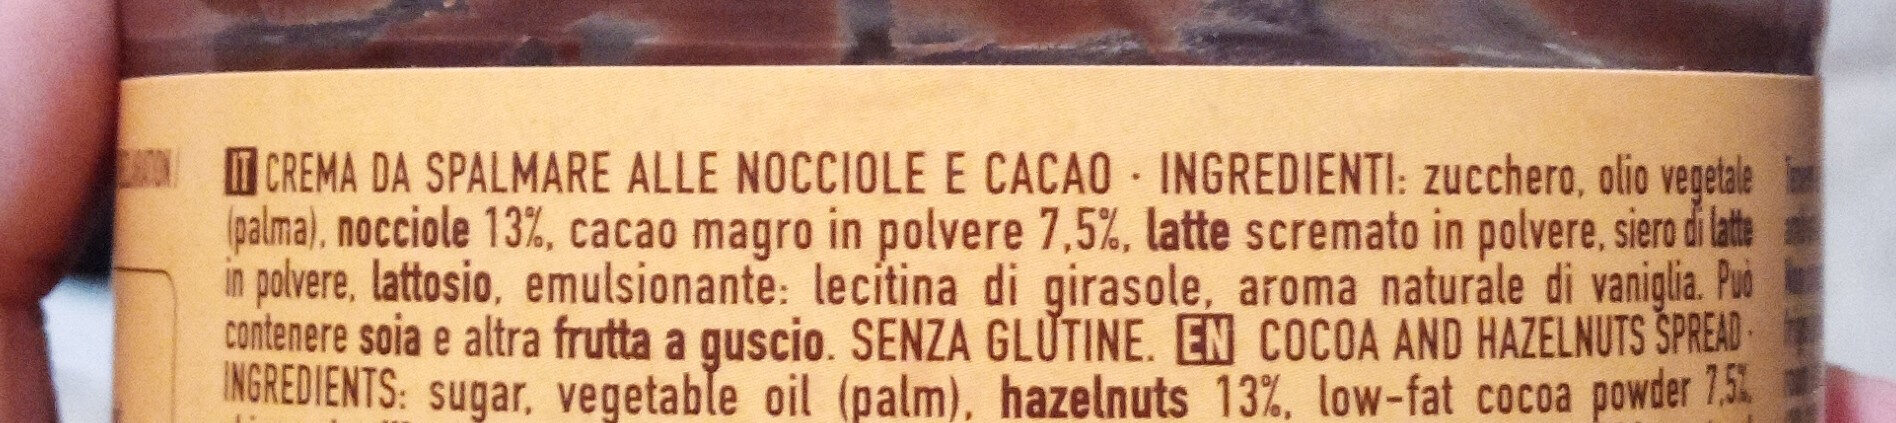 Crema cacao con nocciole - Ingredienti